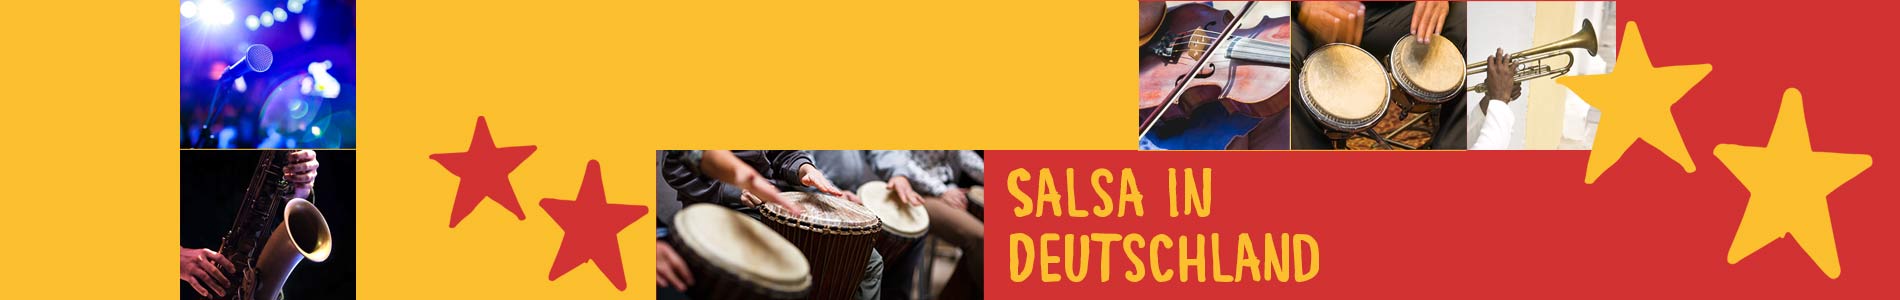 Salsa in Bötzingen – Salsa lernen und tanzen, Tanzkurse, Partys, Veranstaltungen